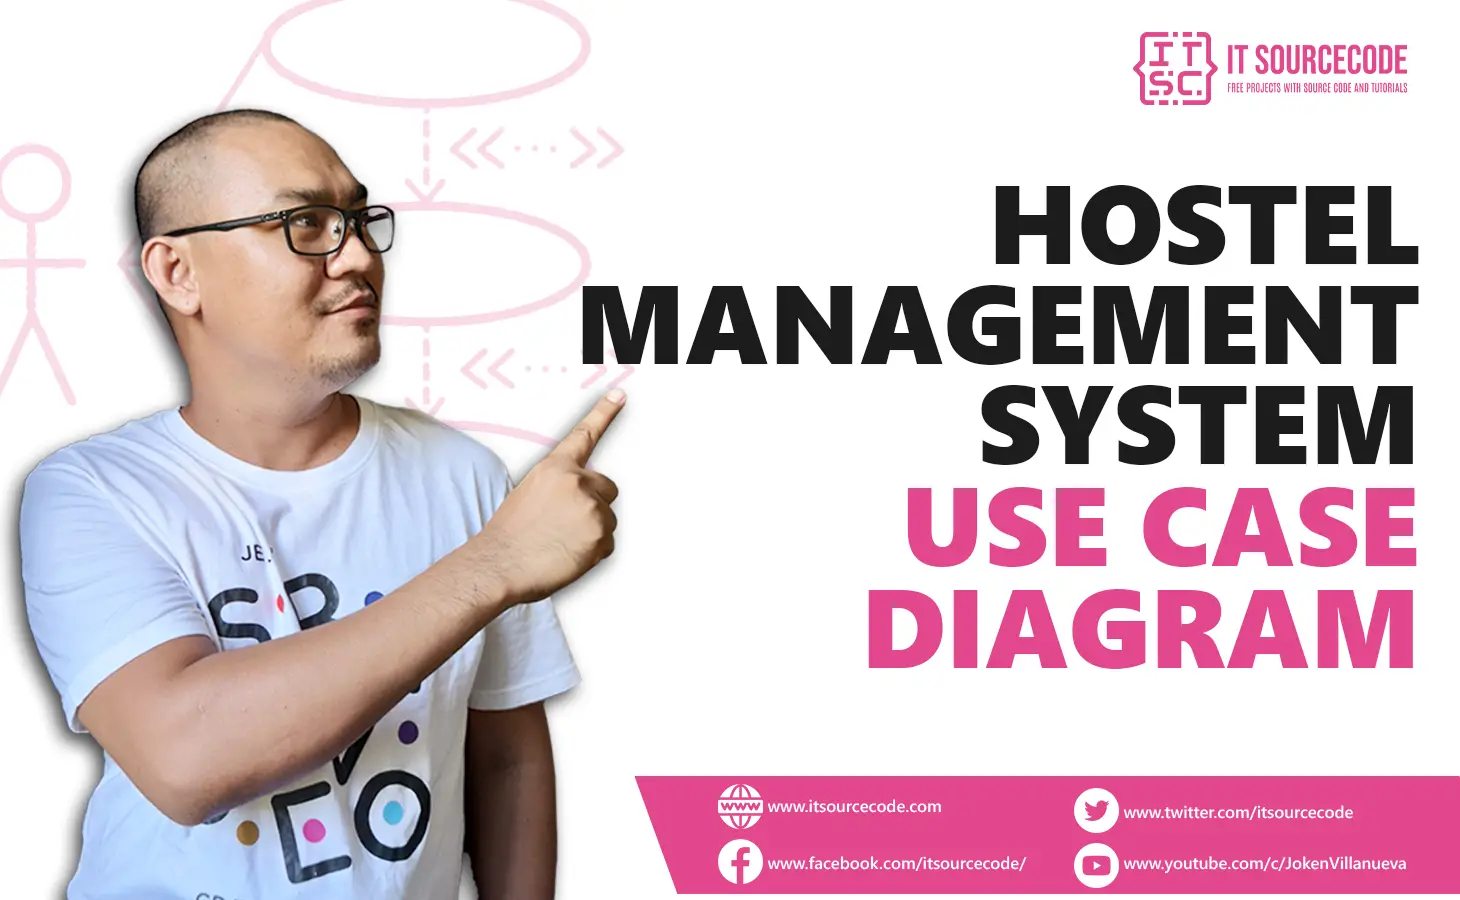 Use Case Diagram for Hostel Management System